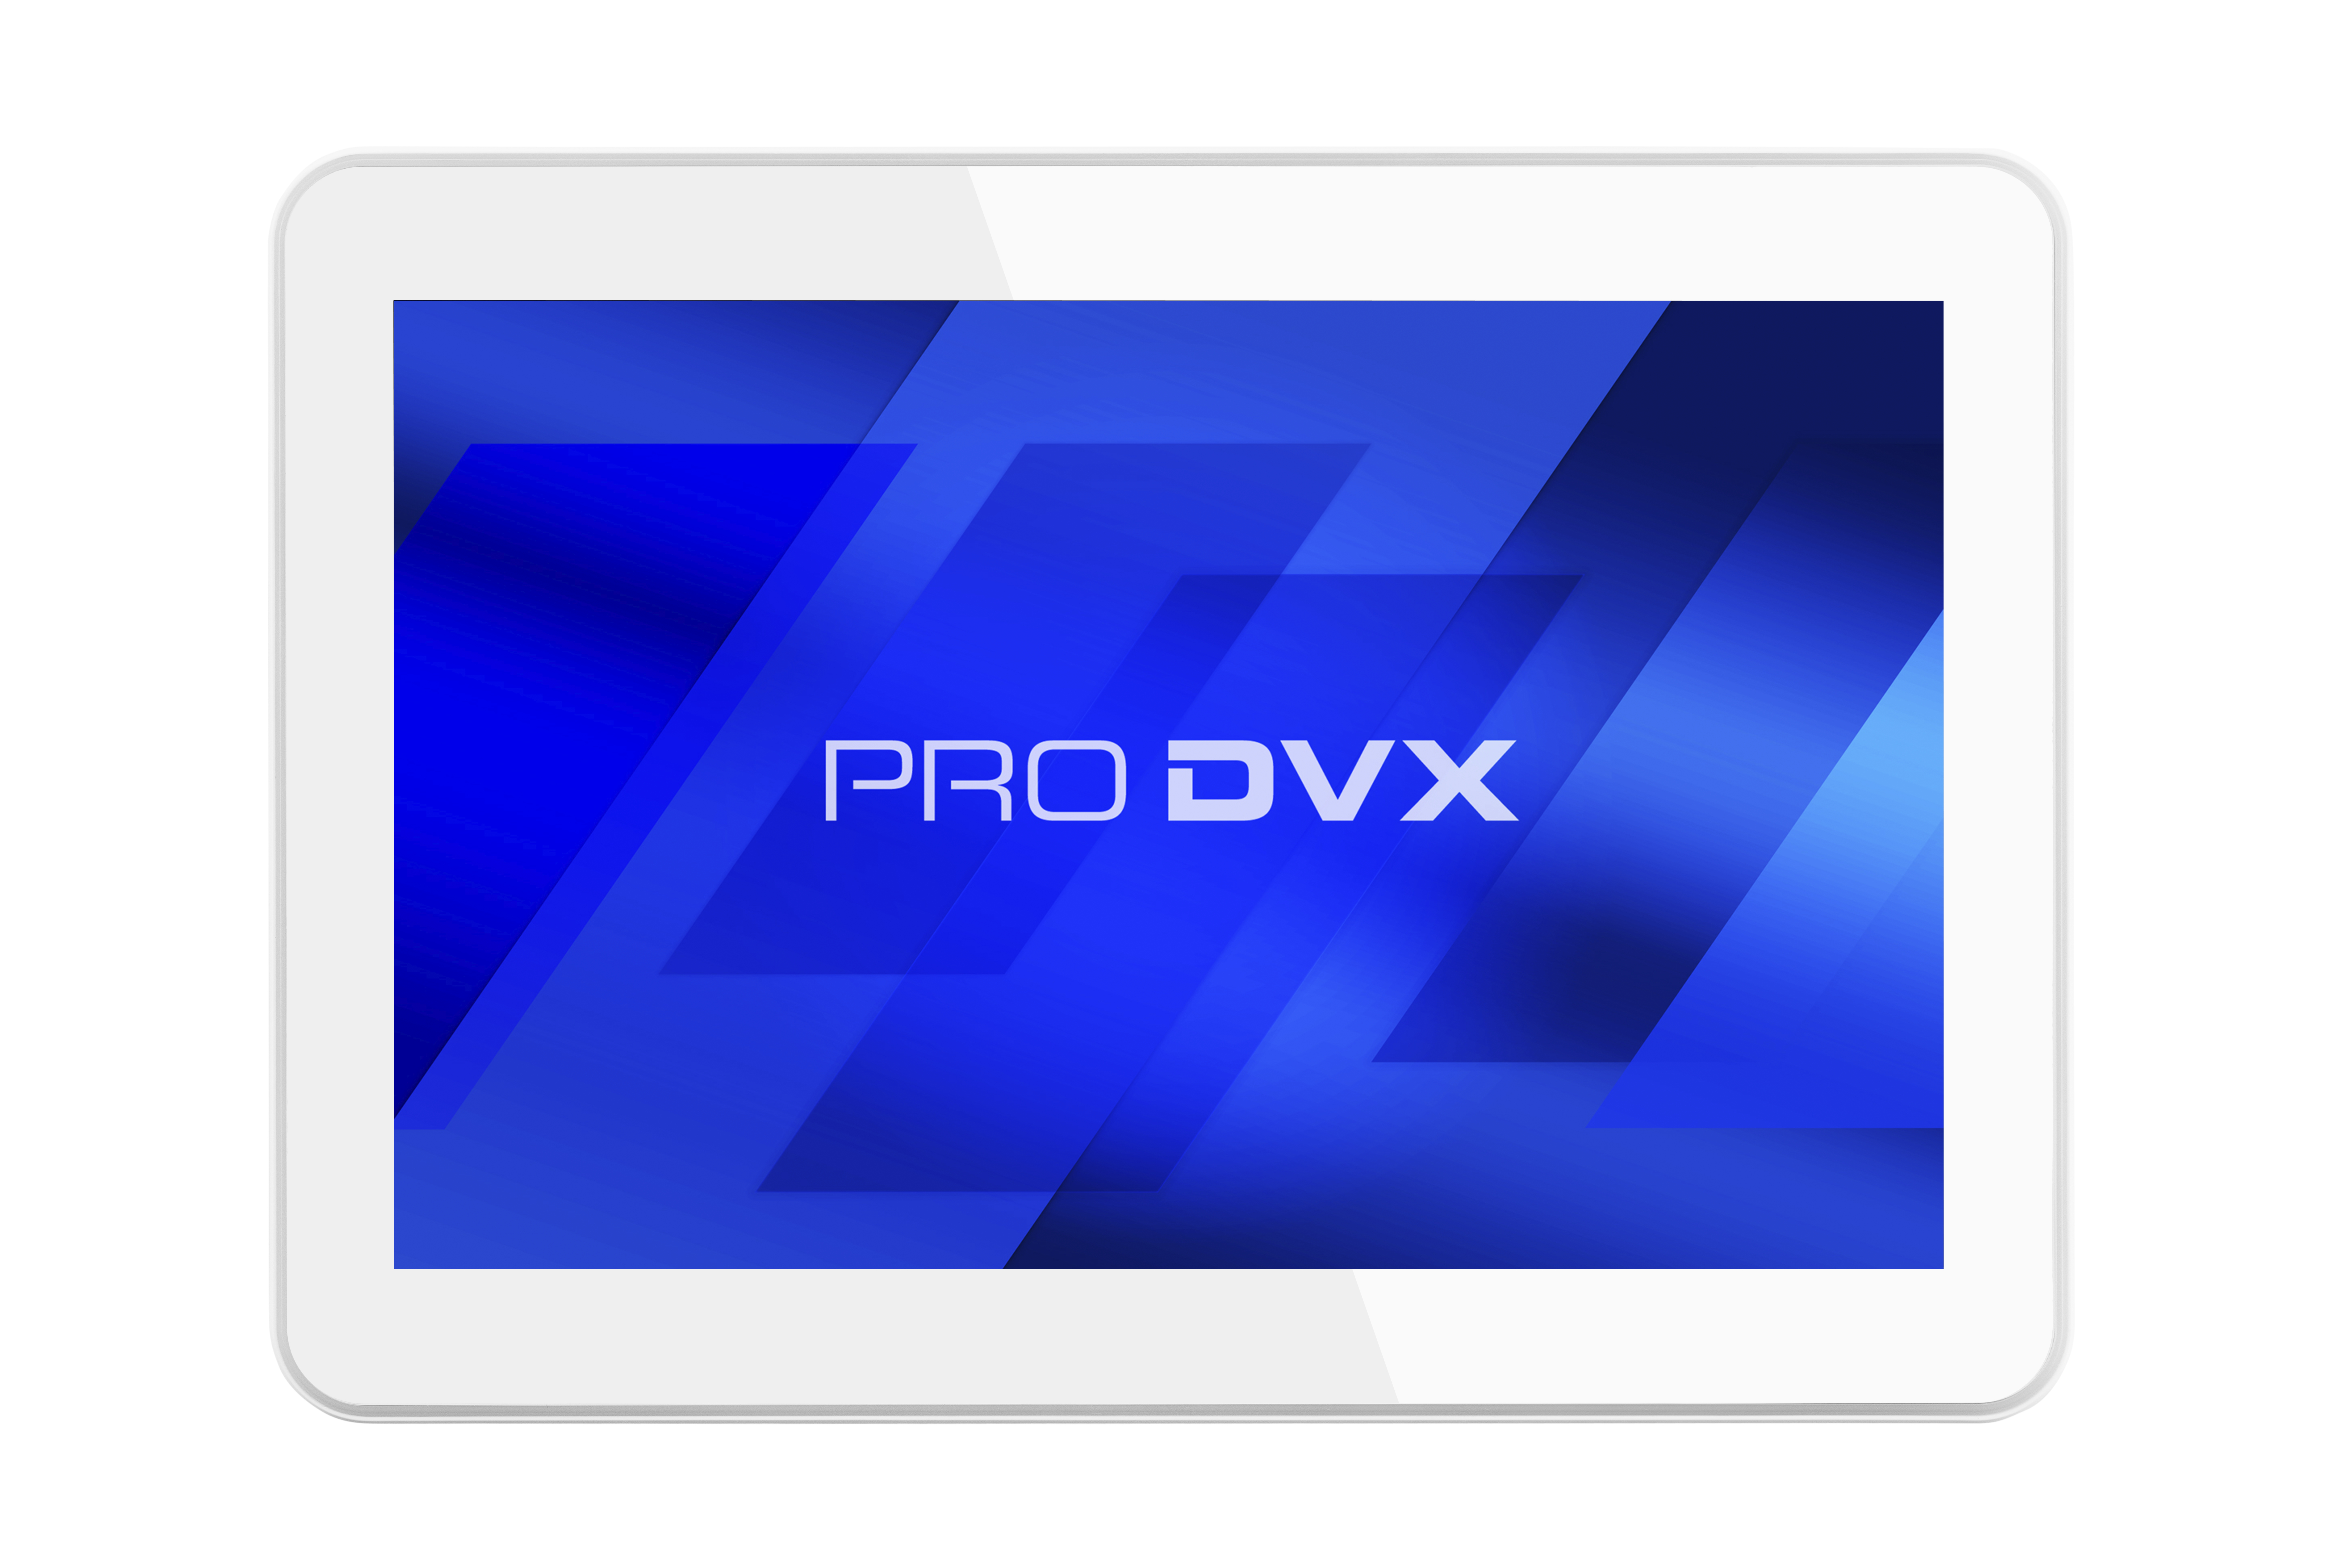 ProDVX IPPC-10SLB